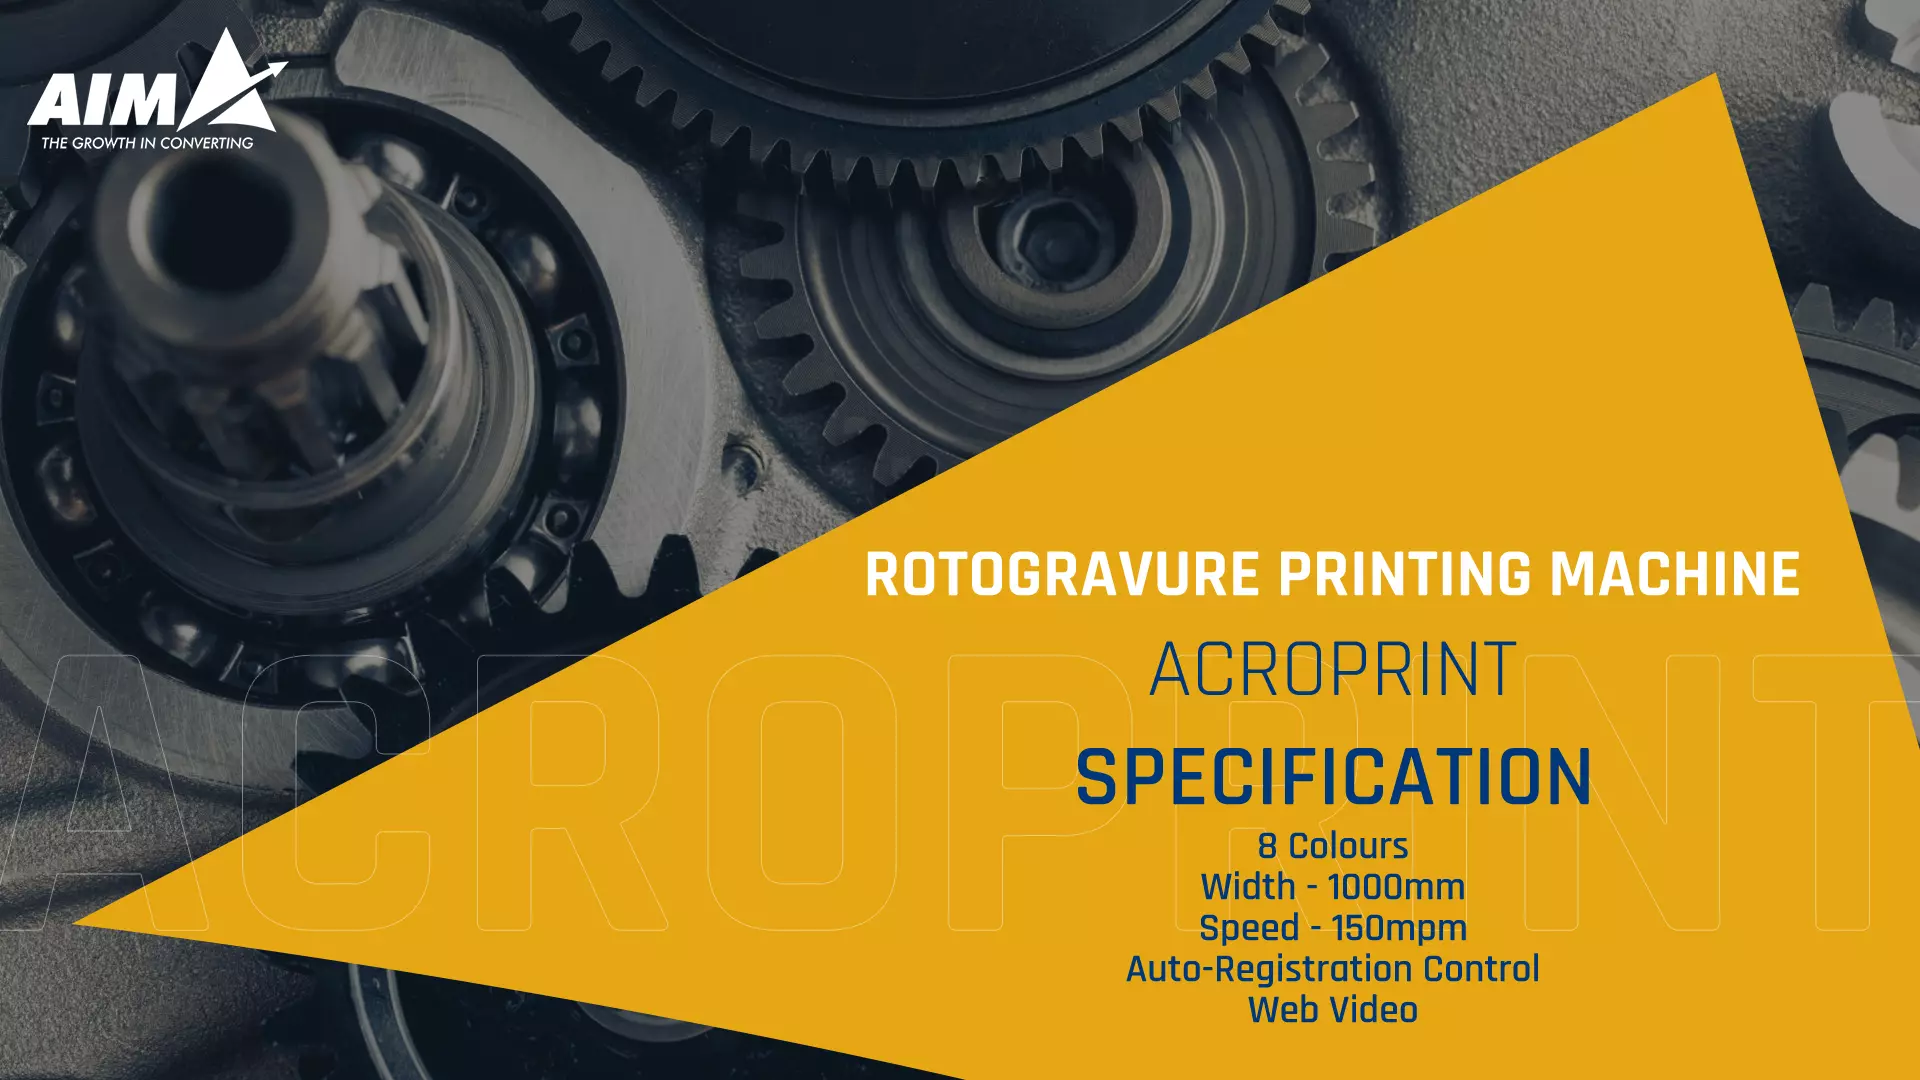 Rotogravure Printing Machine Price in India